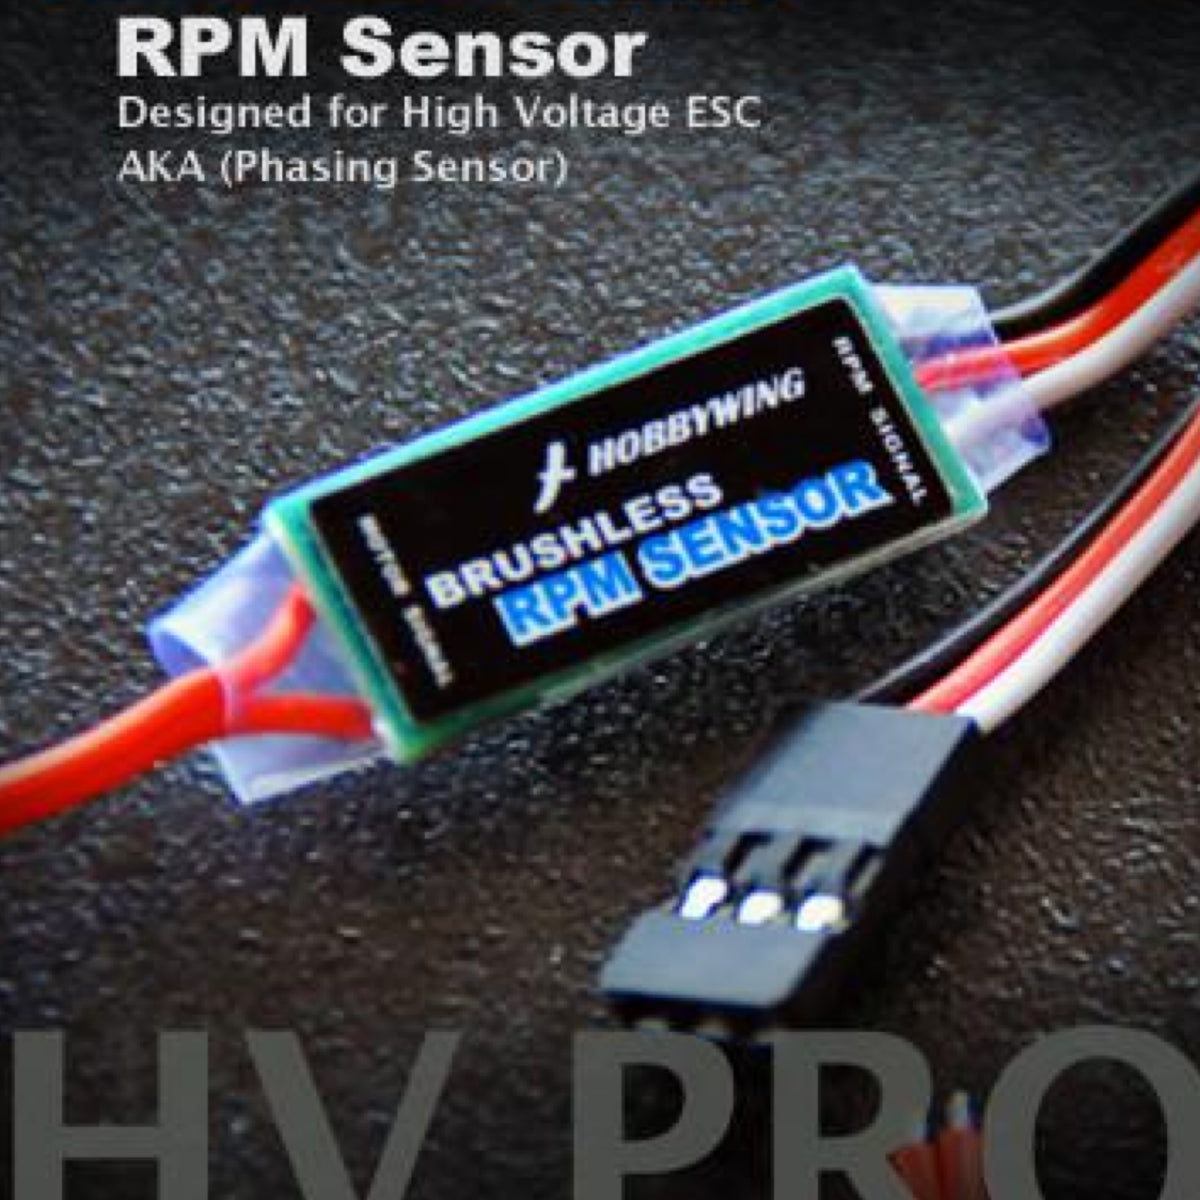 RPM Sensor For High-Voltage ESC